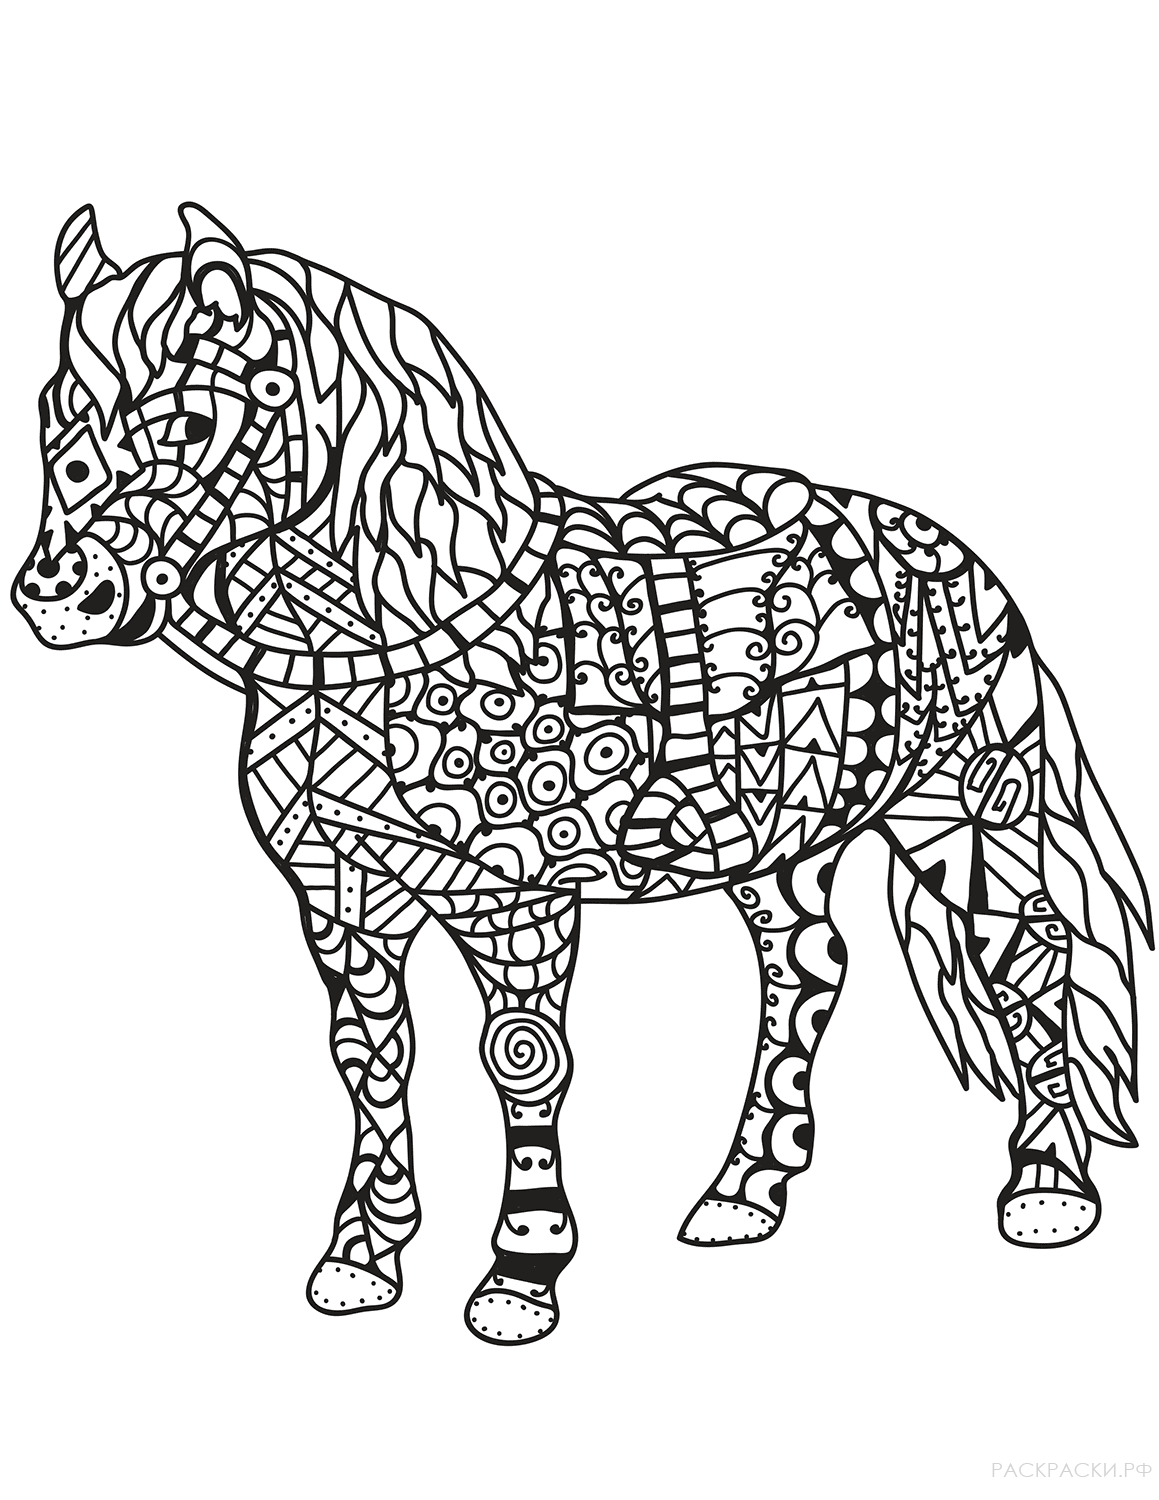 Раскраска Лошадь в технике дзентангл 5